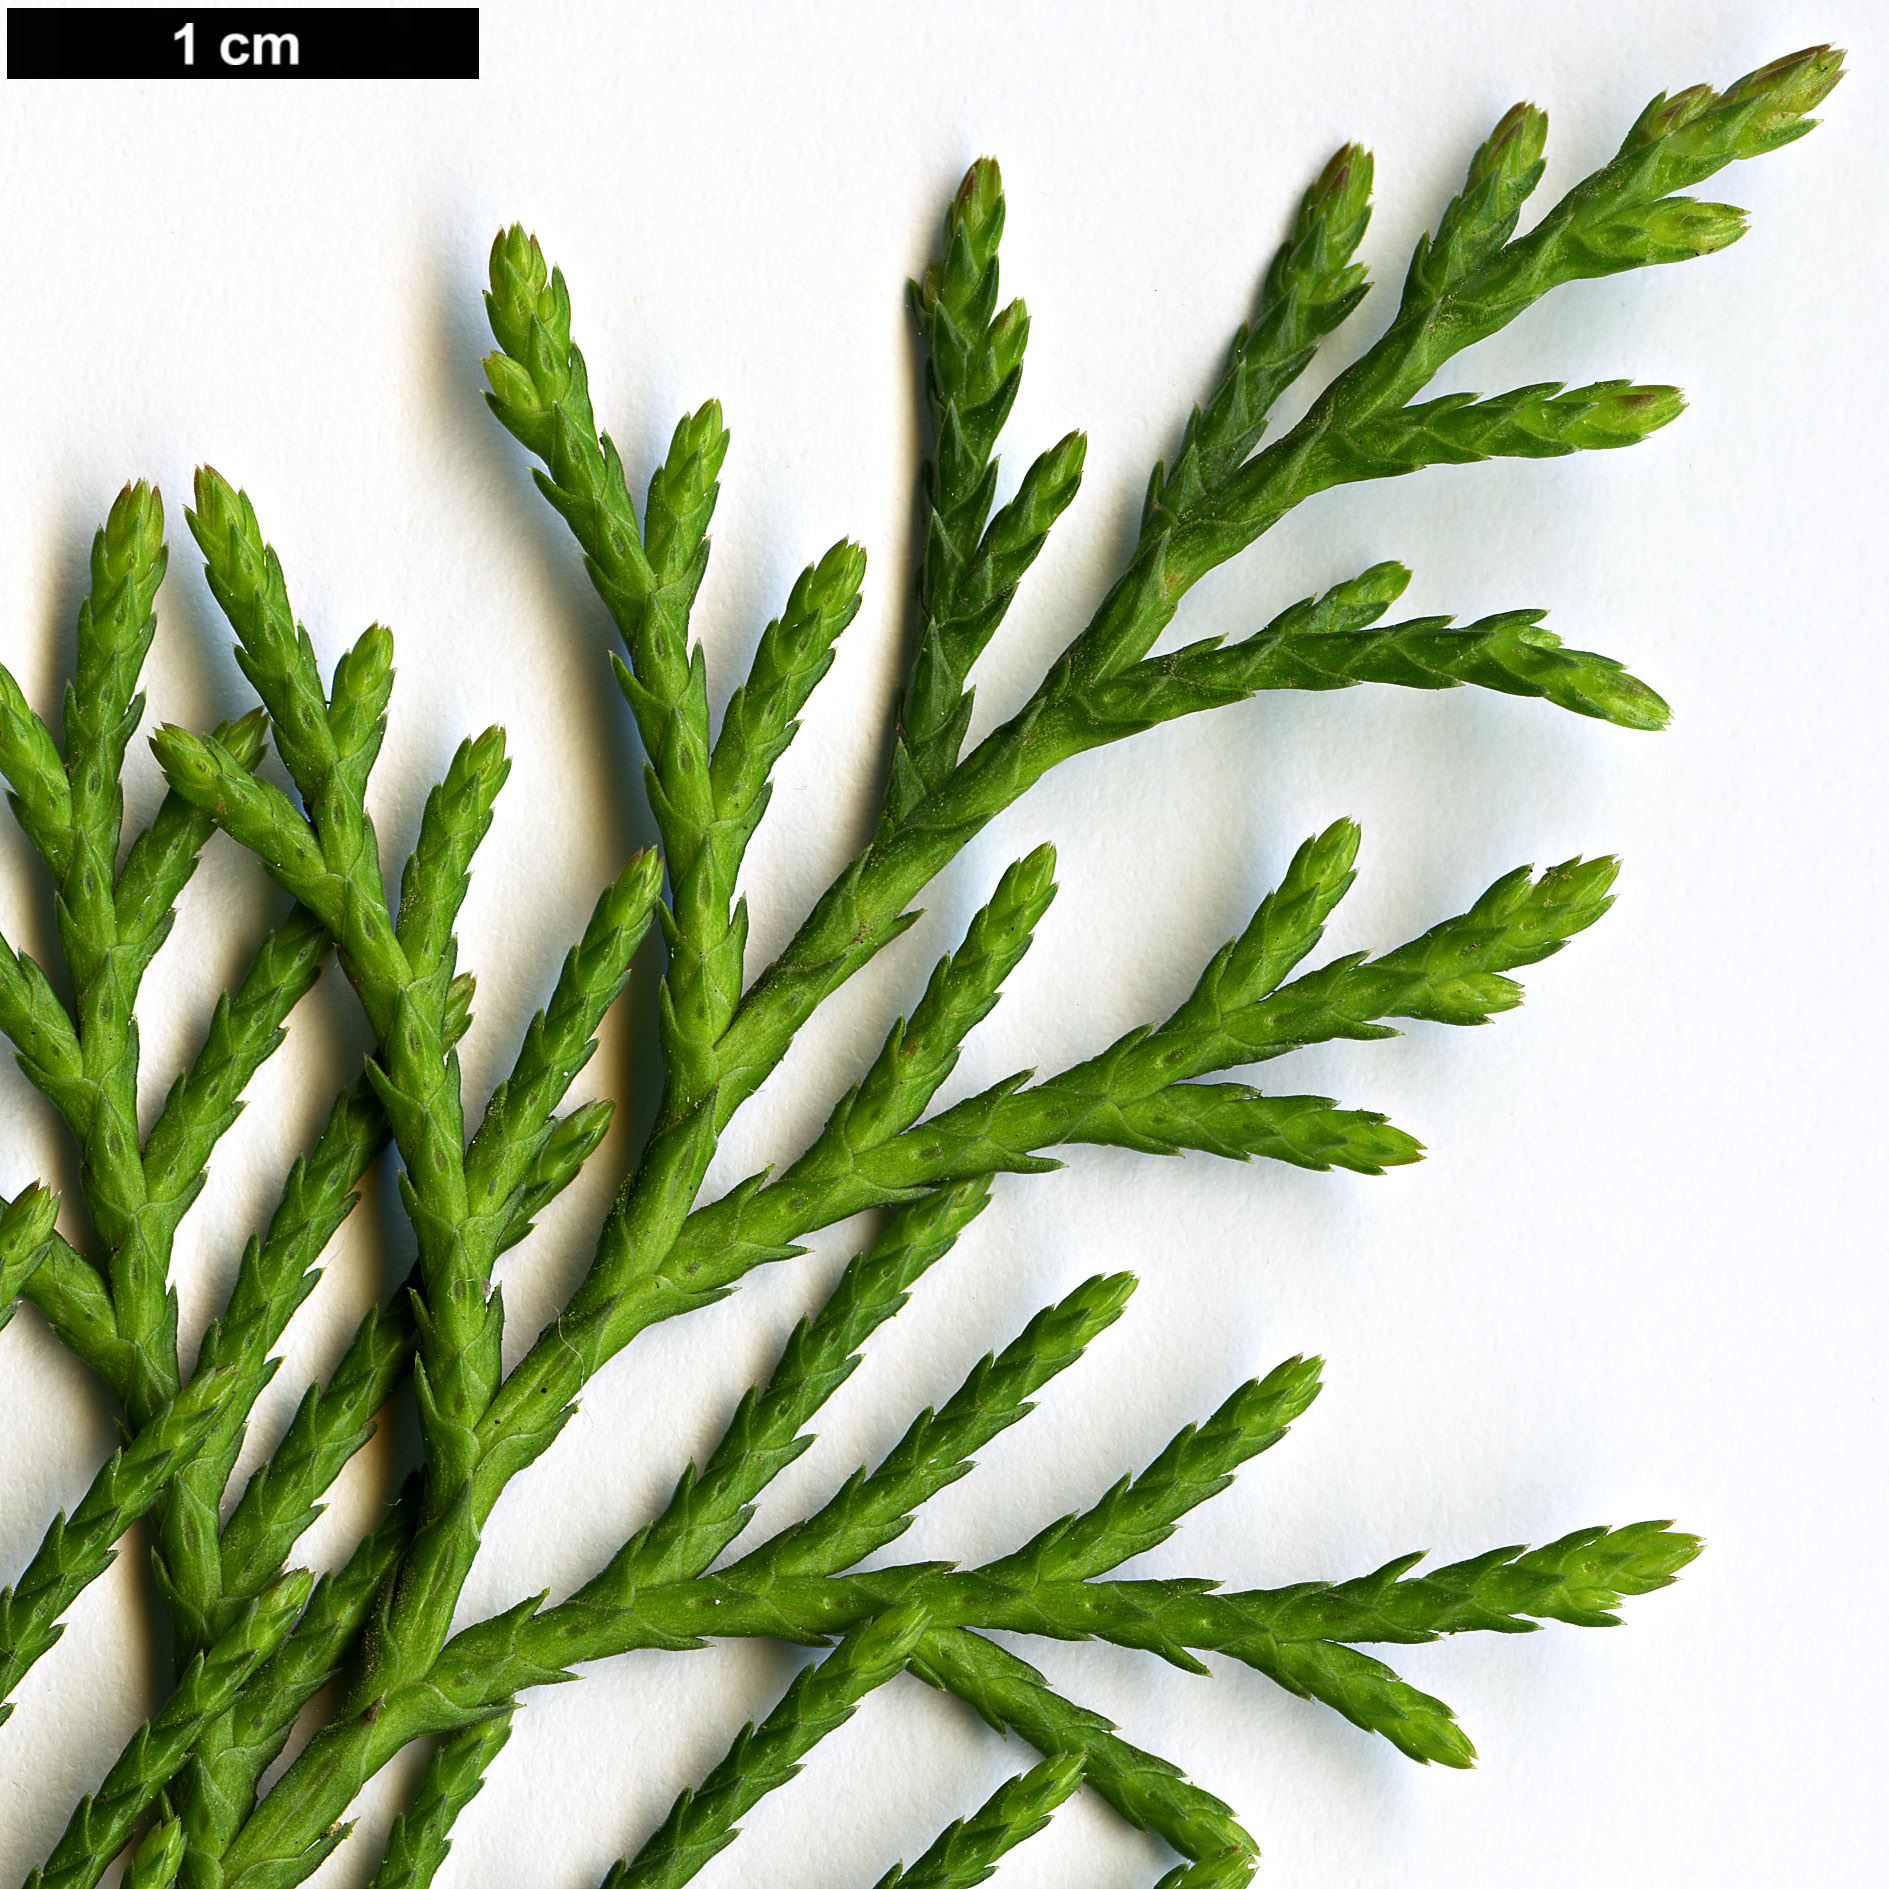 High resolution image: Family: Cupressaceae - Genus: Cupressus - Taxon: lusitanica